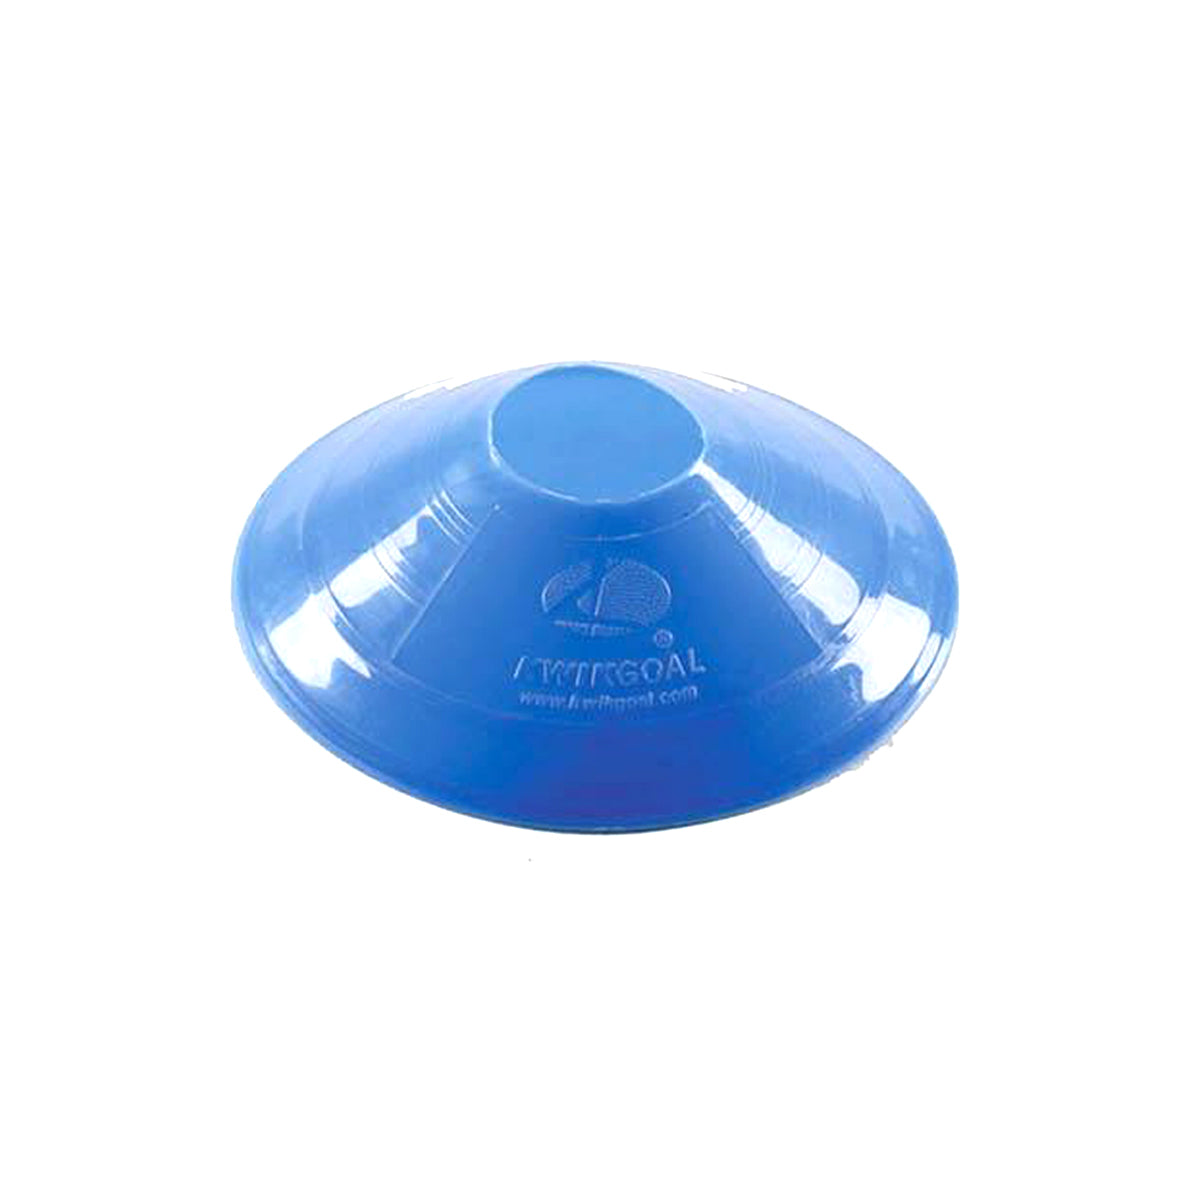 Kwikgoal Small Disc Cones Soccer Coaching Equipment | 6A10 Field equipment Kwikgoal Blue 